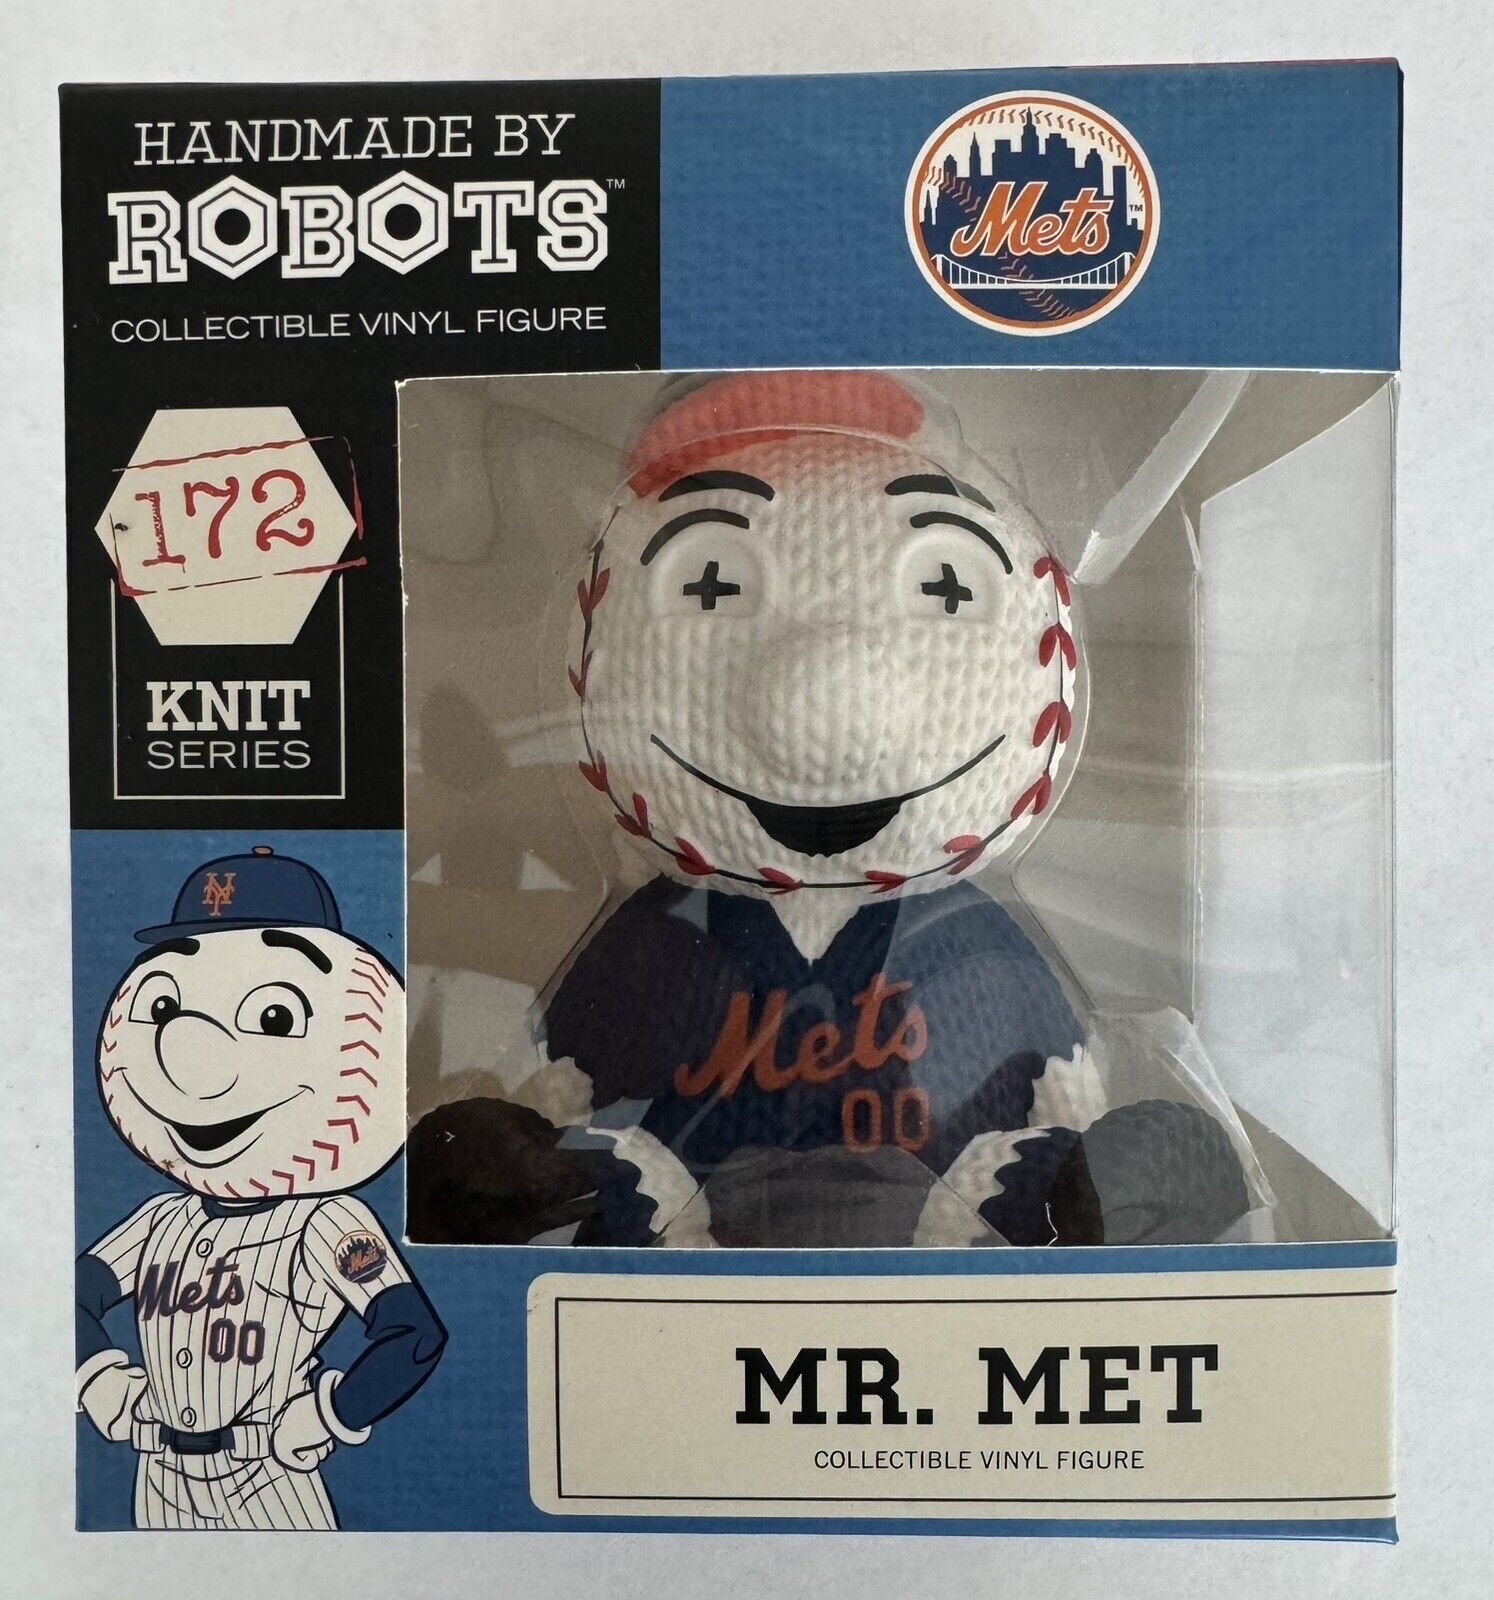 Handmade By Robots Collectible Vinyl Figure Mr. Met (#172) MLB NY Mets. Queens